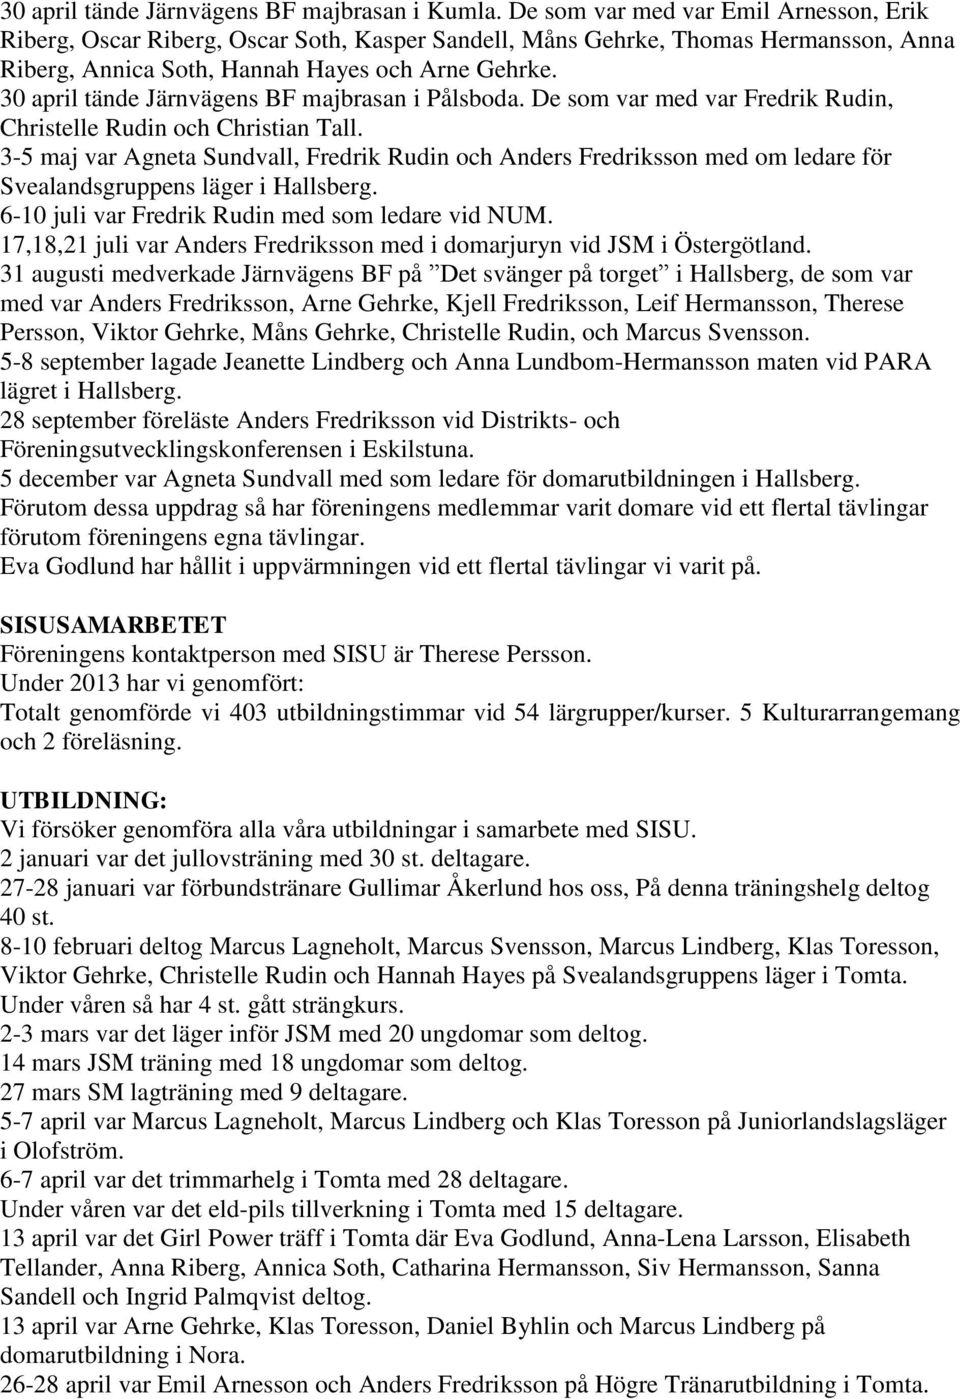 30 april tände Järnvägens BF majbrasan i Pålsboda. De som var med var Fredrik Rudin, Christelle Rudin och Christian Tall.